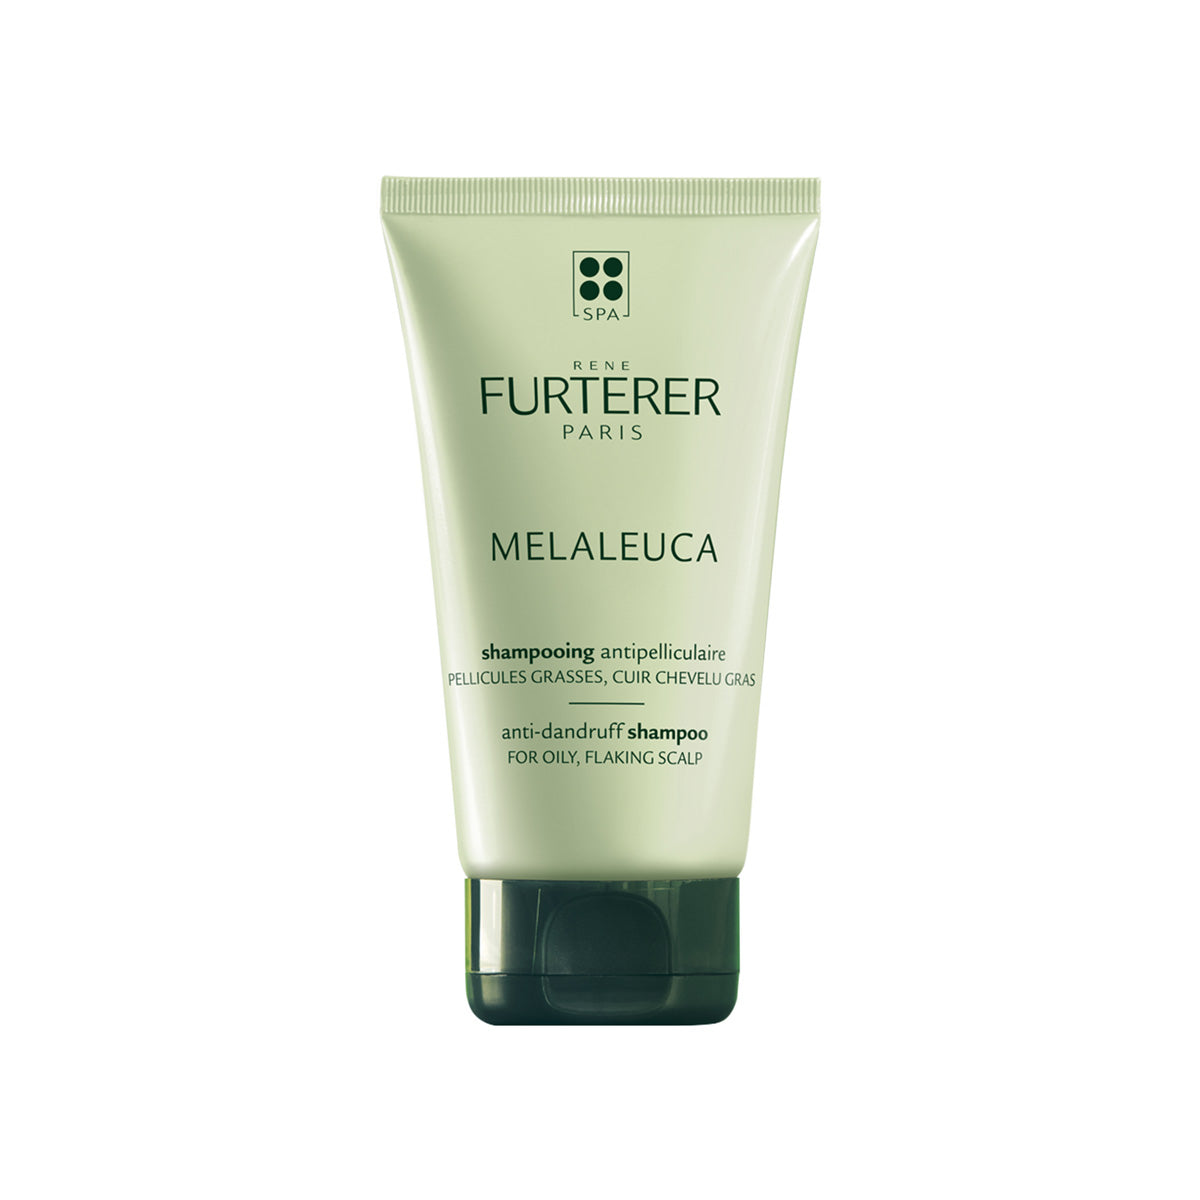 Rene Furtere|Melaleuca Anti-Dandruff Shampoo For Oily, Flaky Scalp|150ml